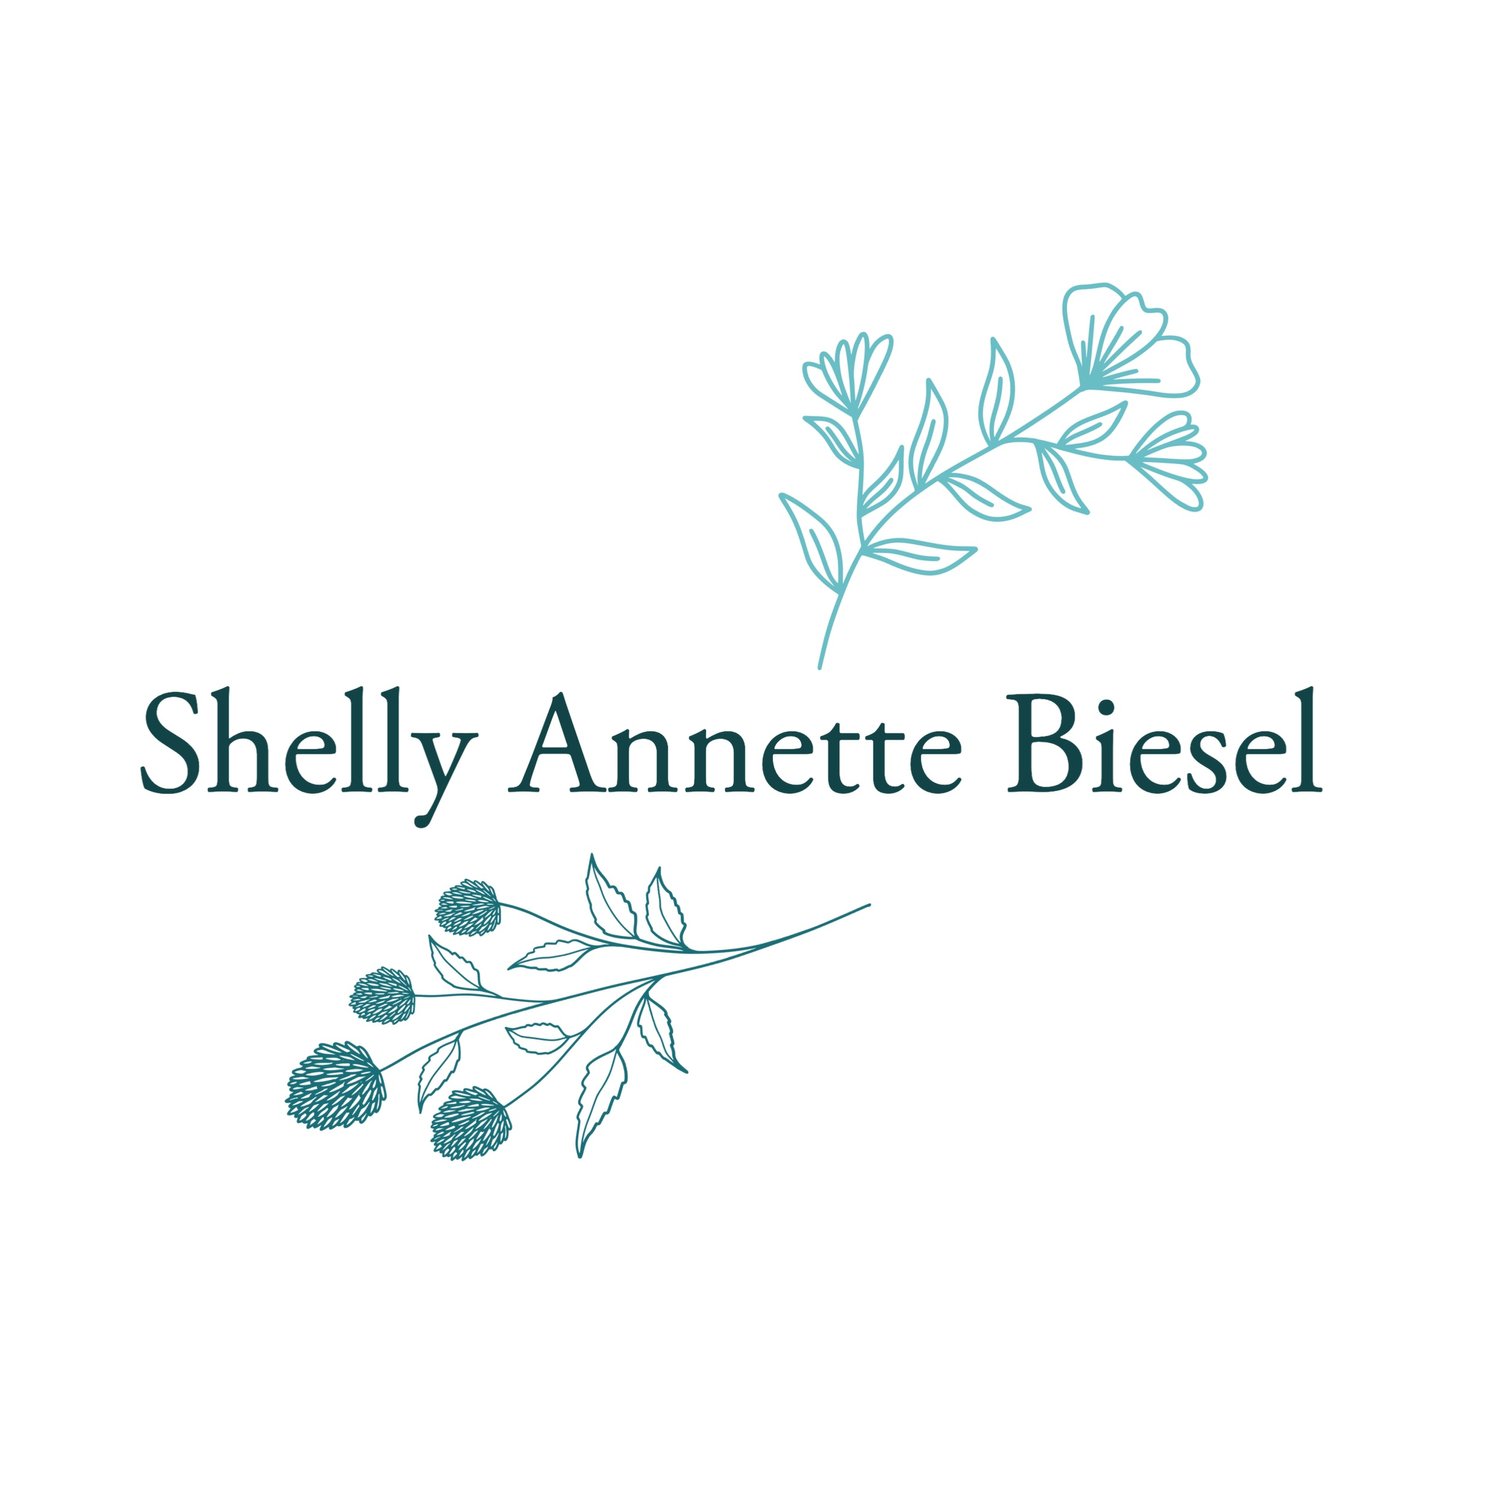 Shelly Annette Biesel